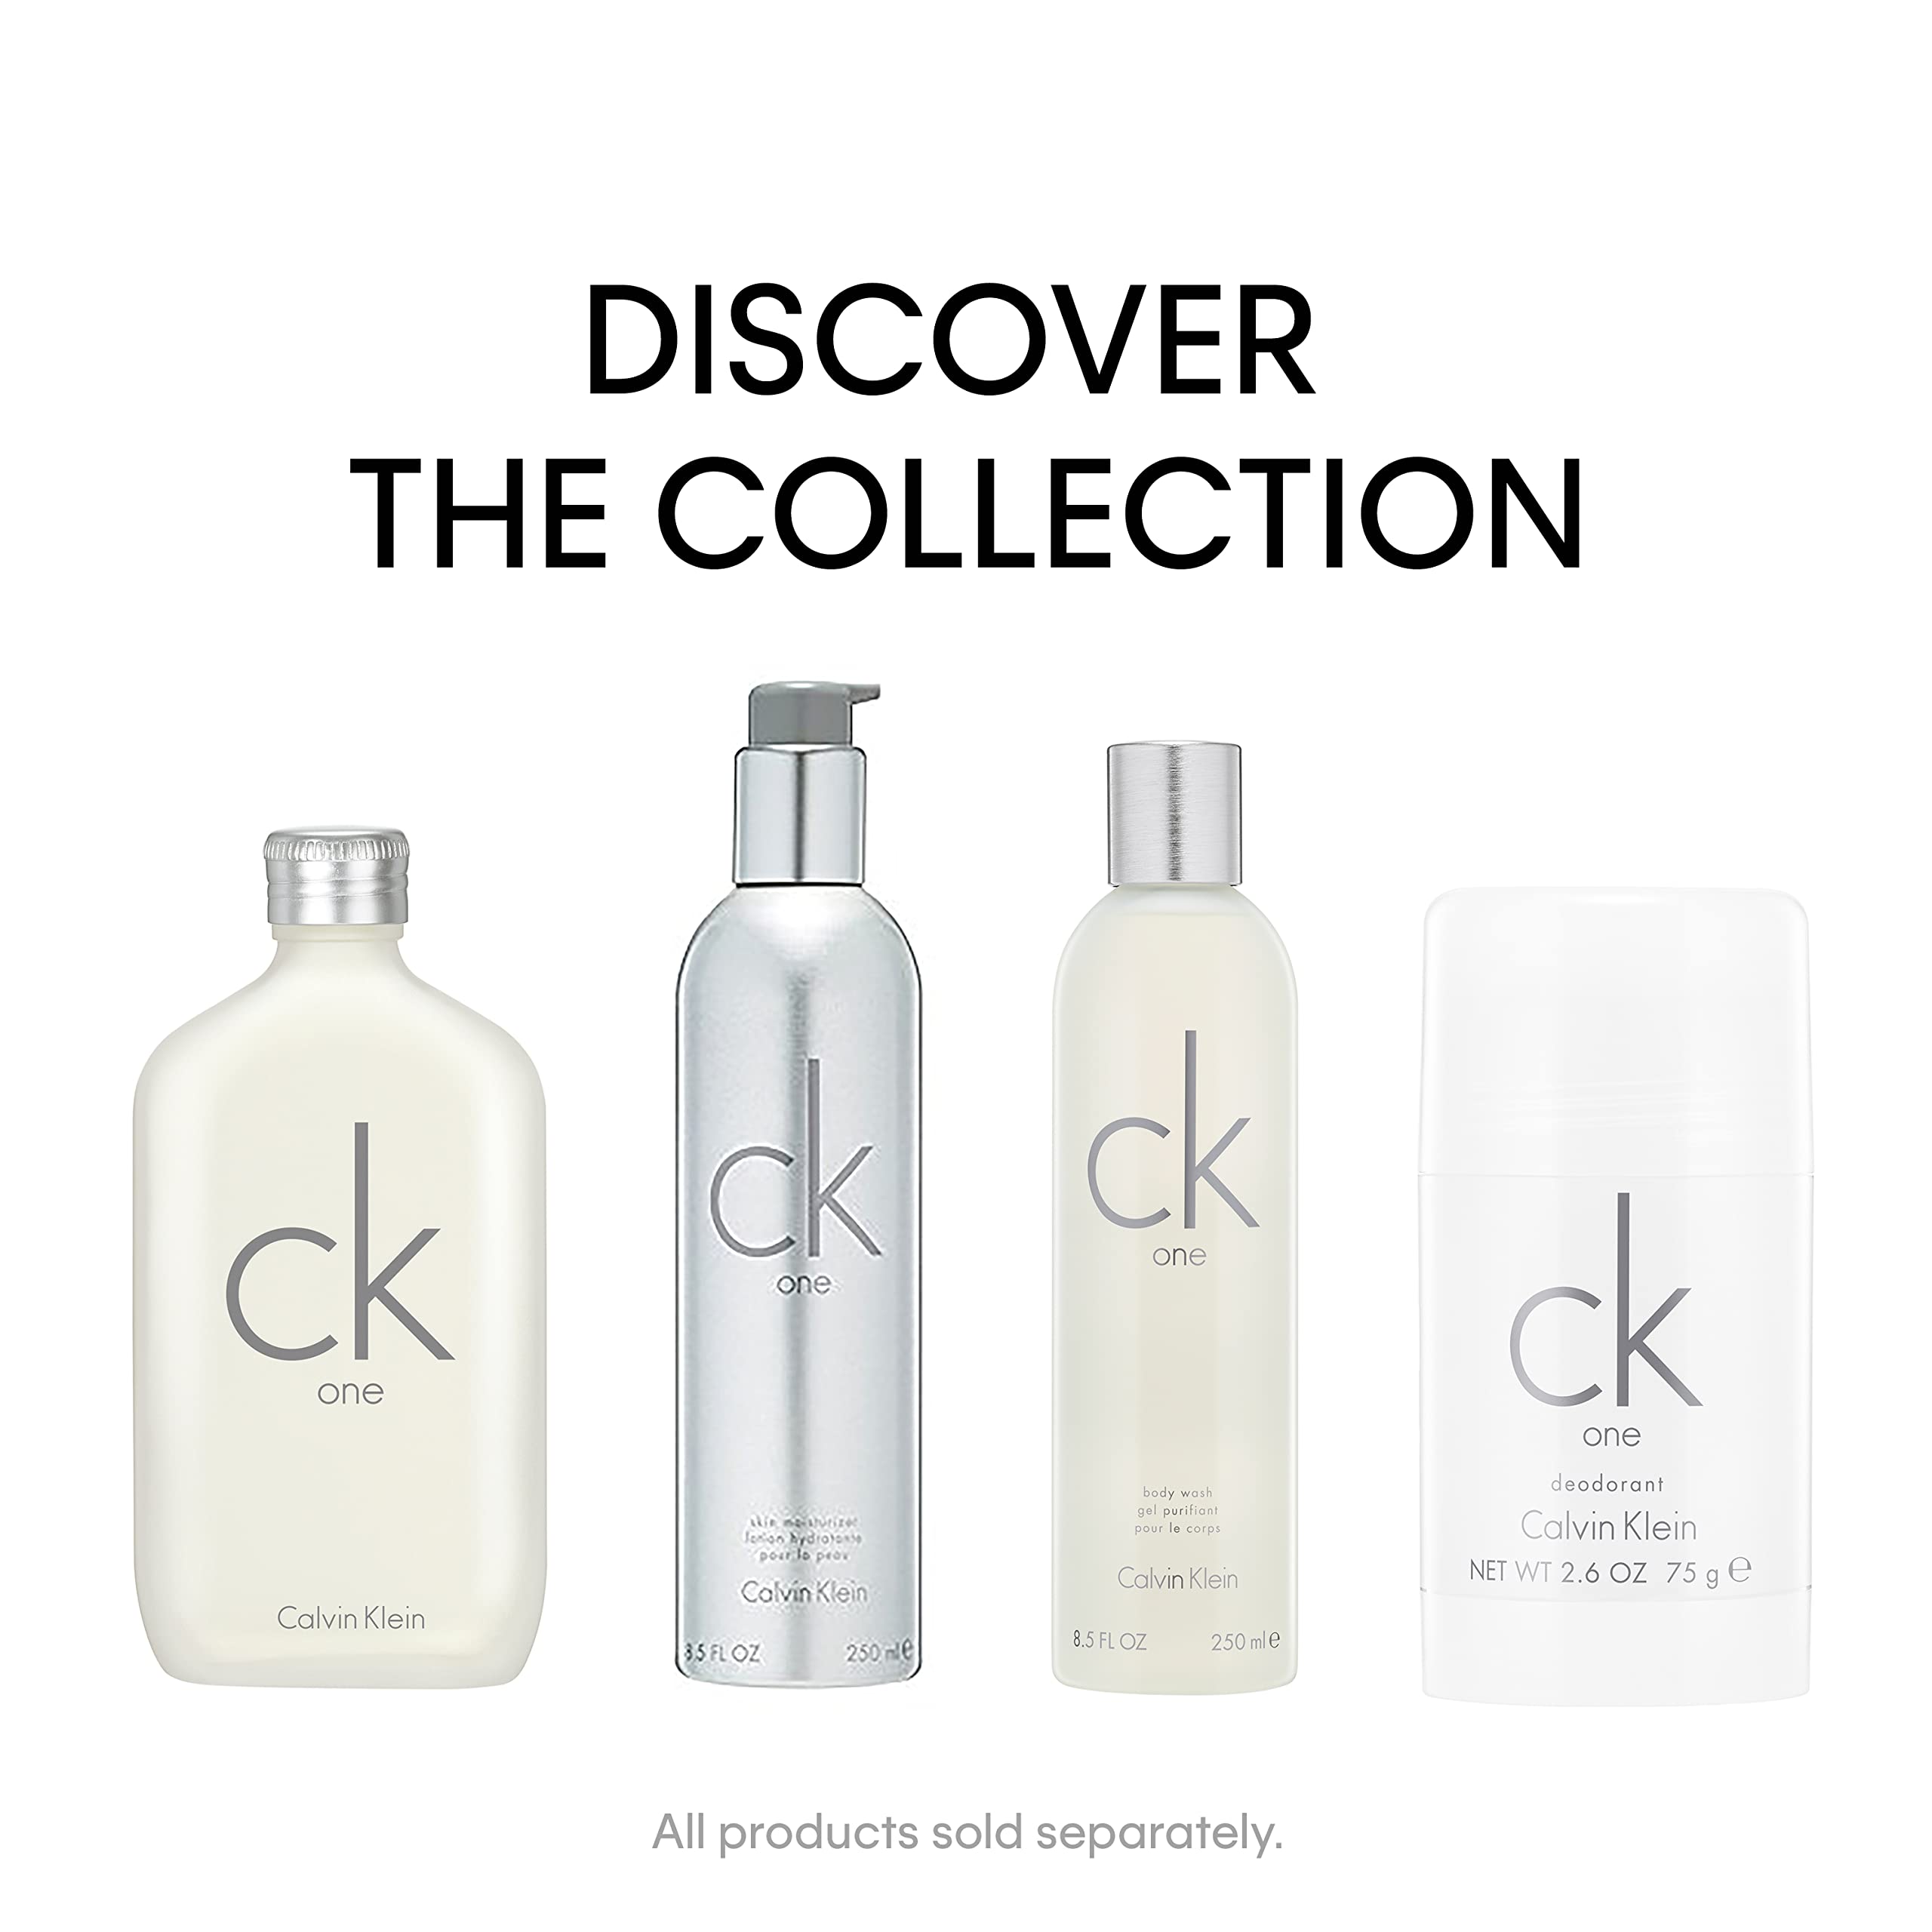 Calvin Klein CK One Unisex eau de toilette spray & Deodorant Duo